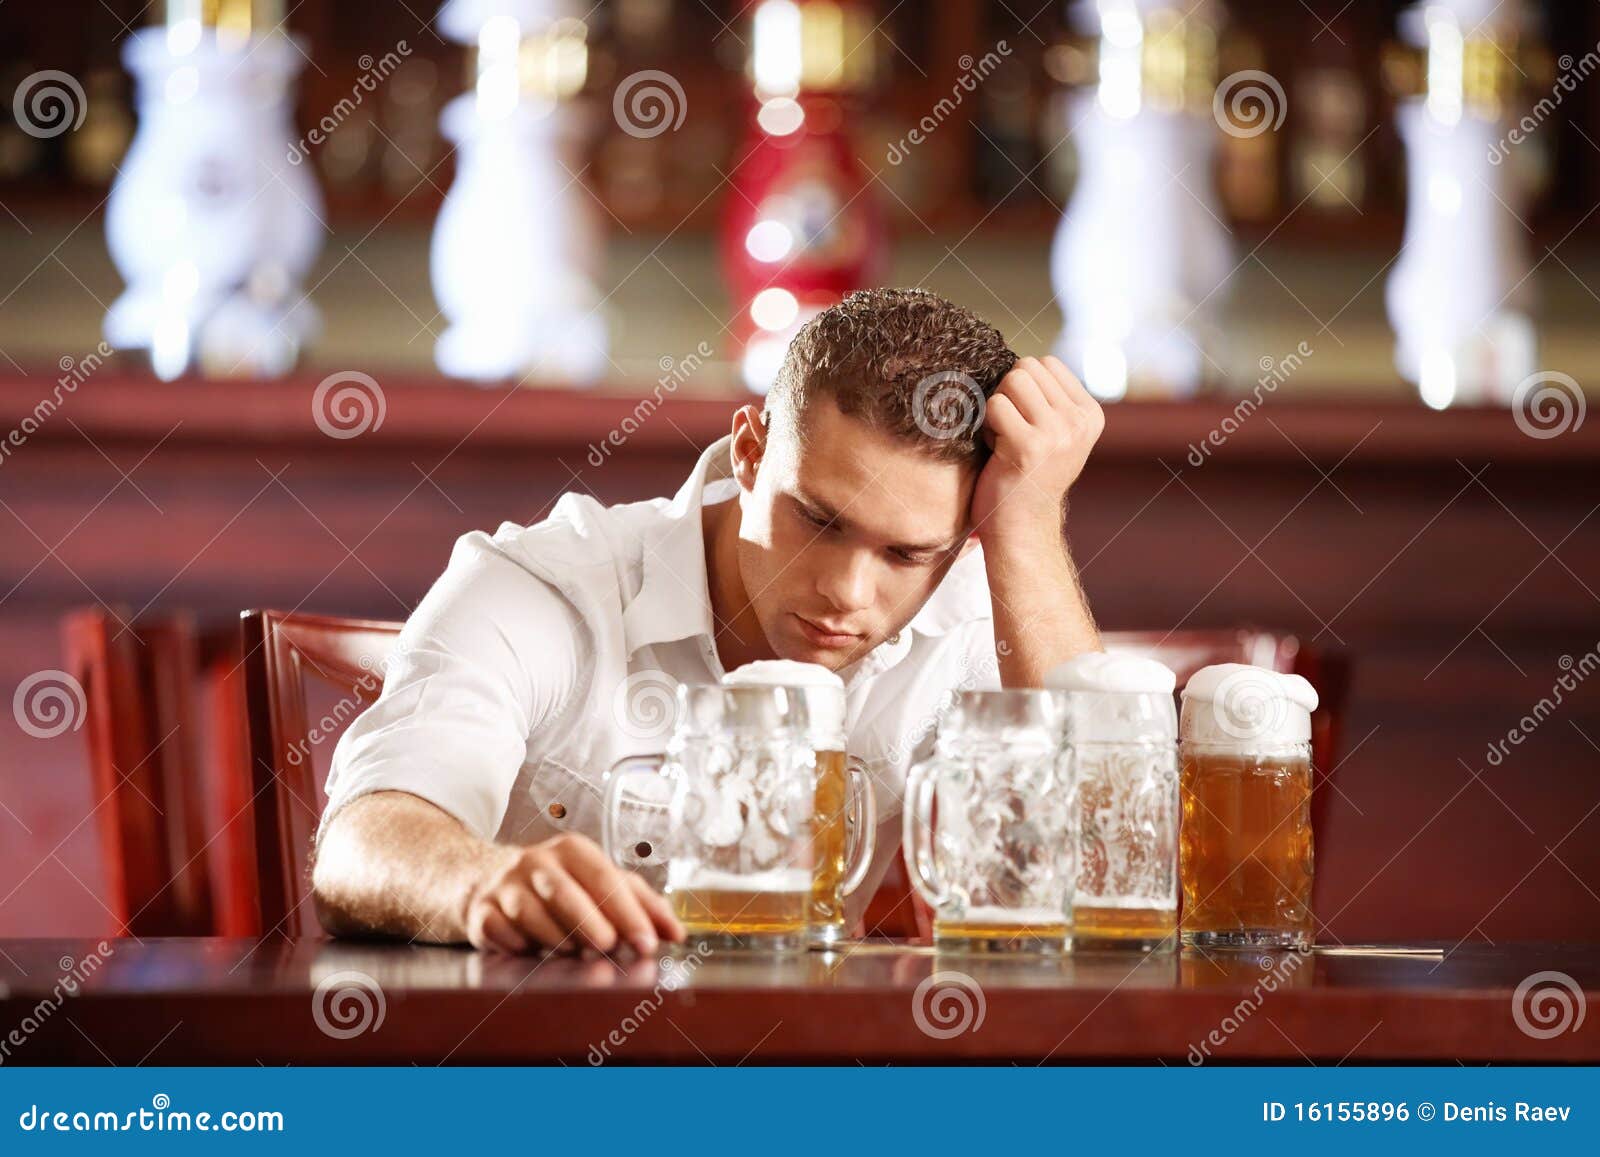 醉酒和沮丧的年轻人 库存图片. 图片 包括有 消沉, 男人, 玻璃, 从属, 人员, 醉酒, 男性, 孤独 - 32773067